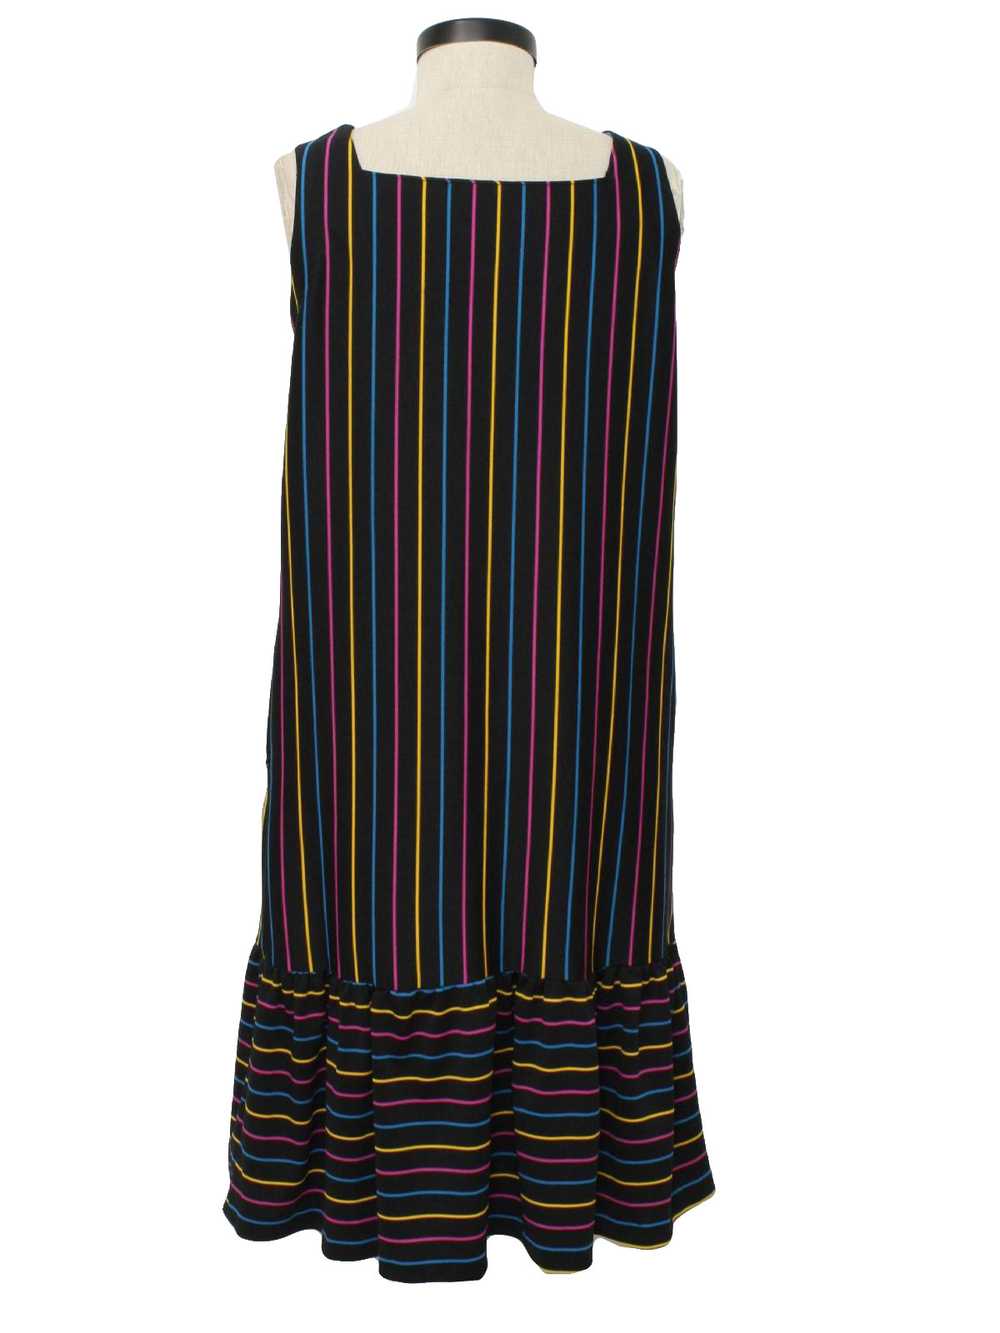 1970's Mod Dress - image 3